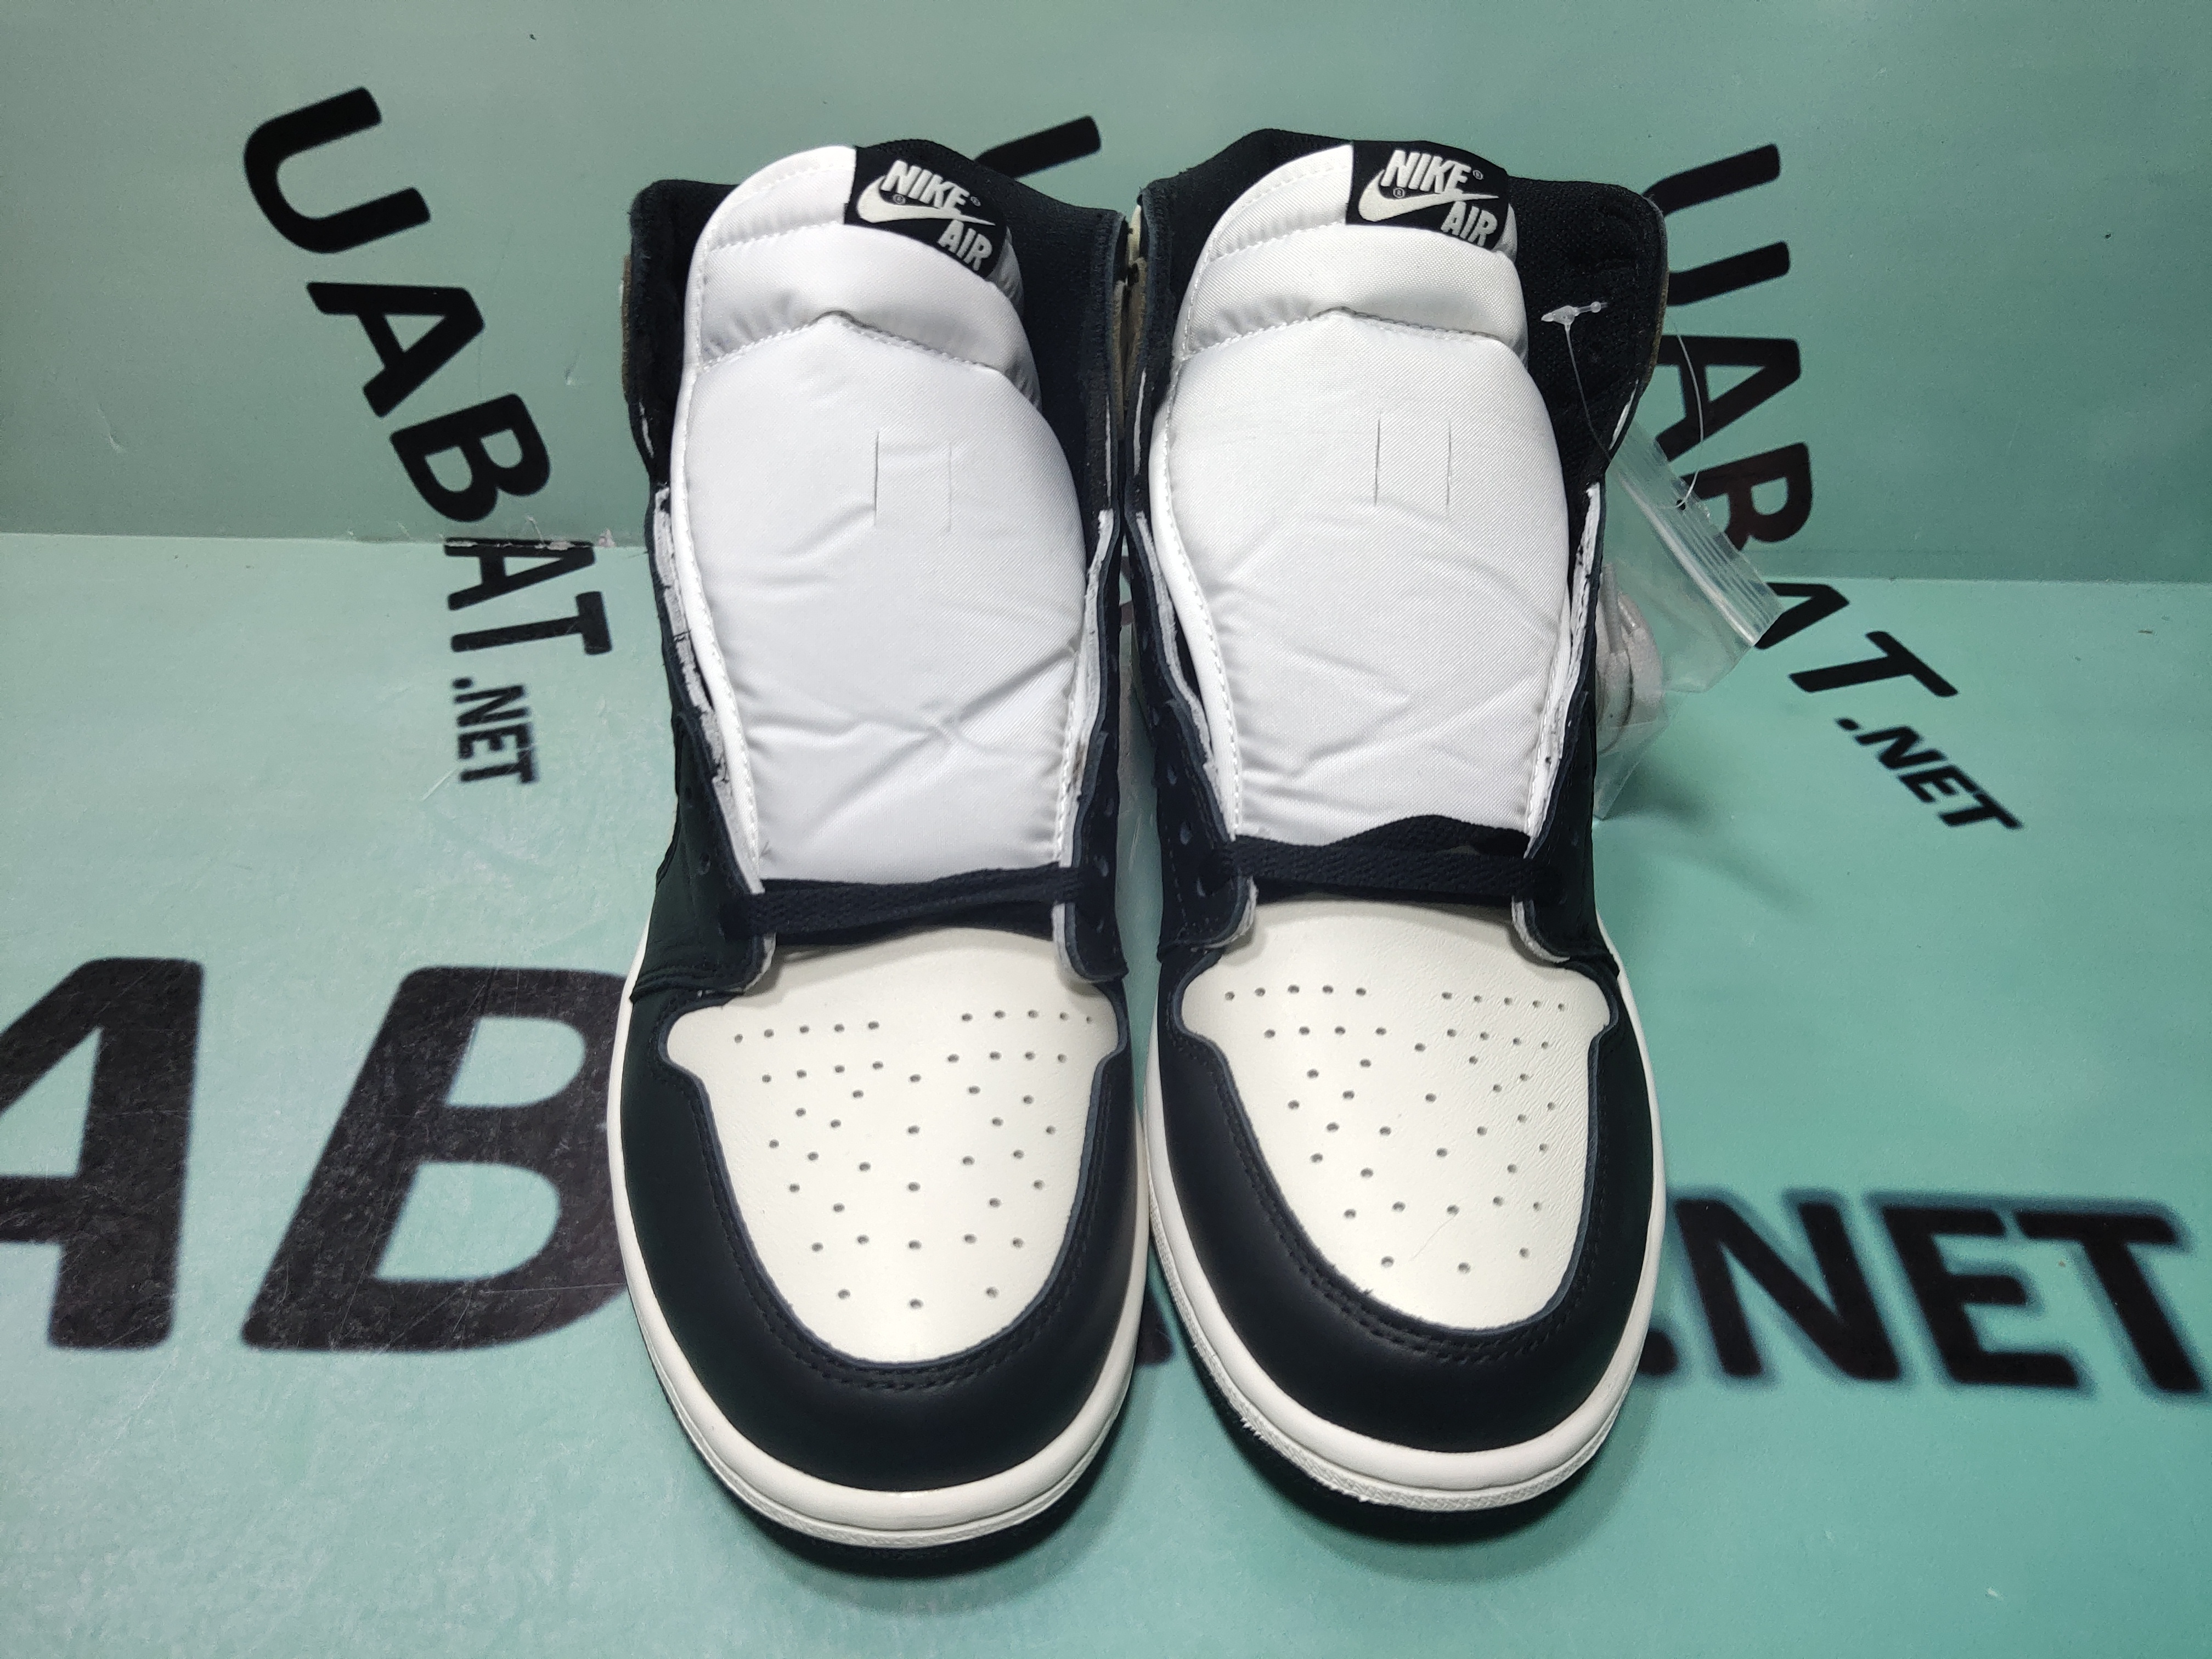 new off white x air jordan 4 sail cv9388 100 shoes